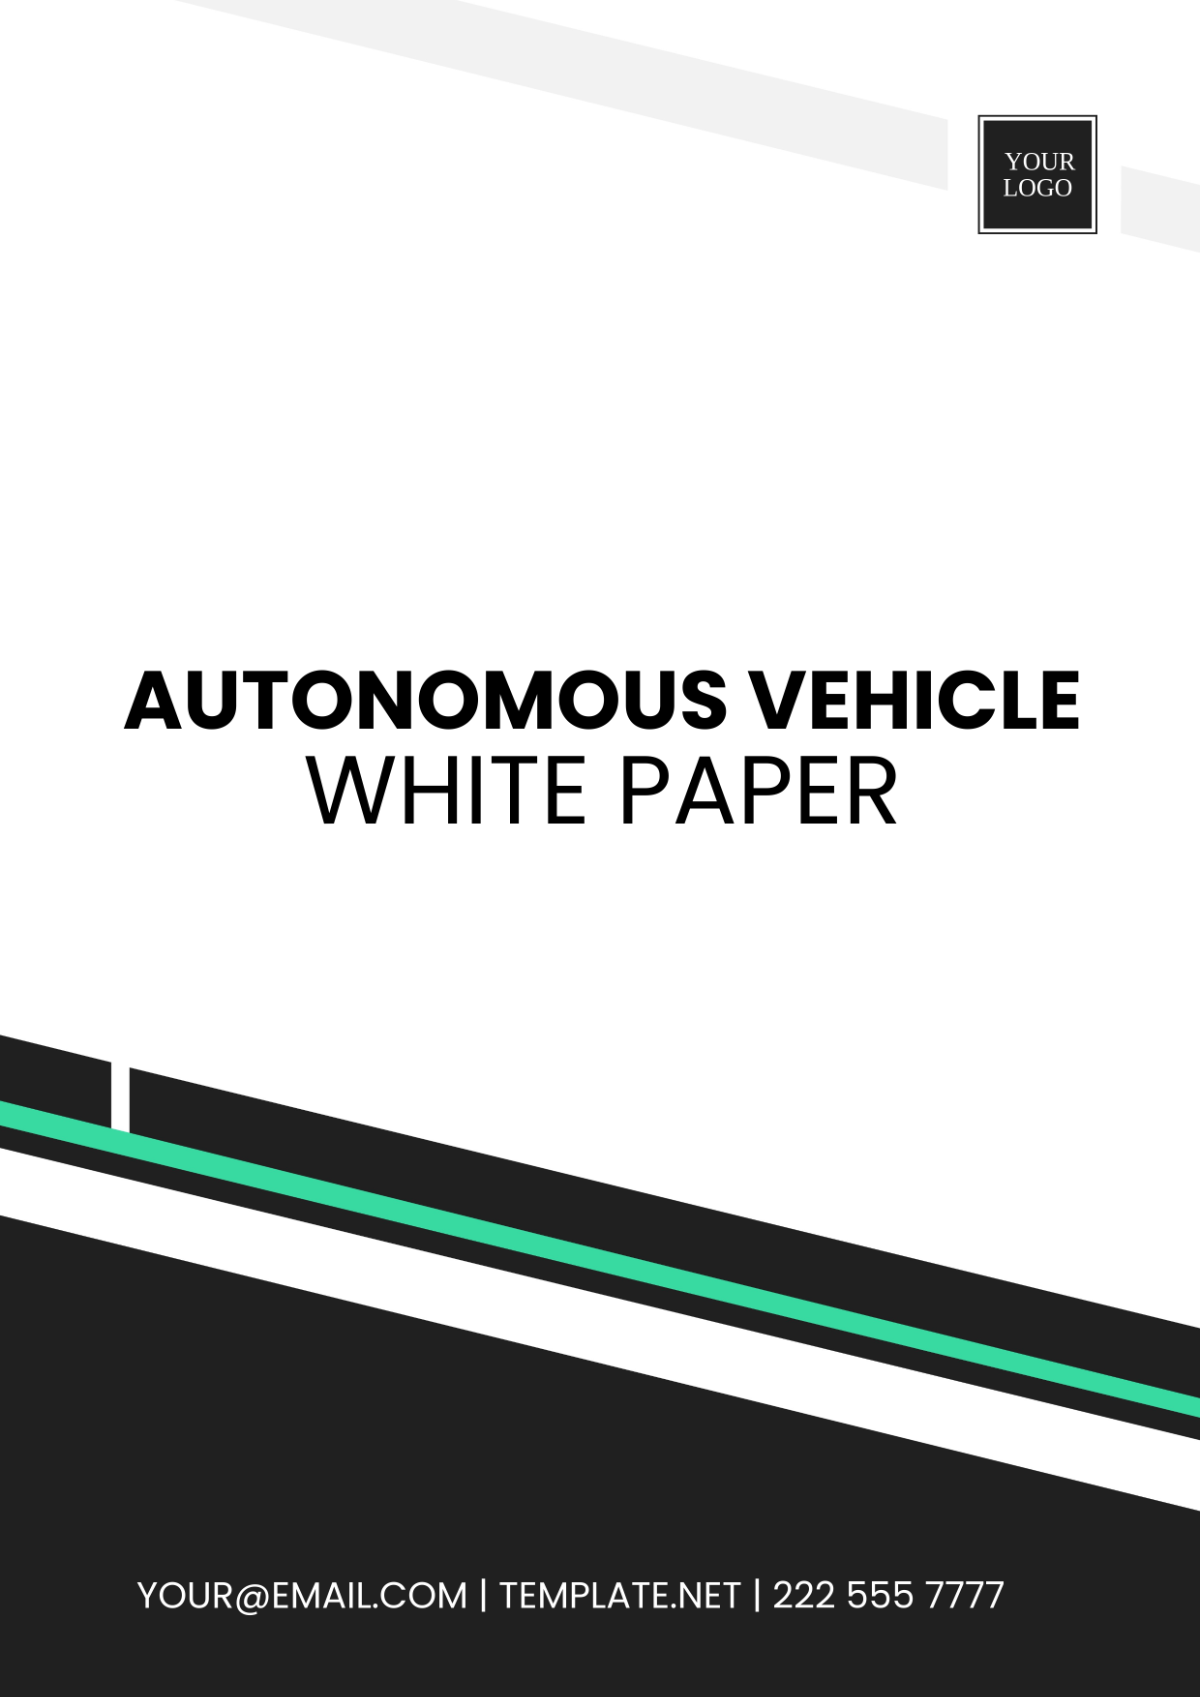 Free Autonomous Vehicle White Paper Template